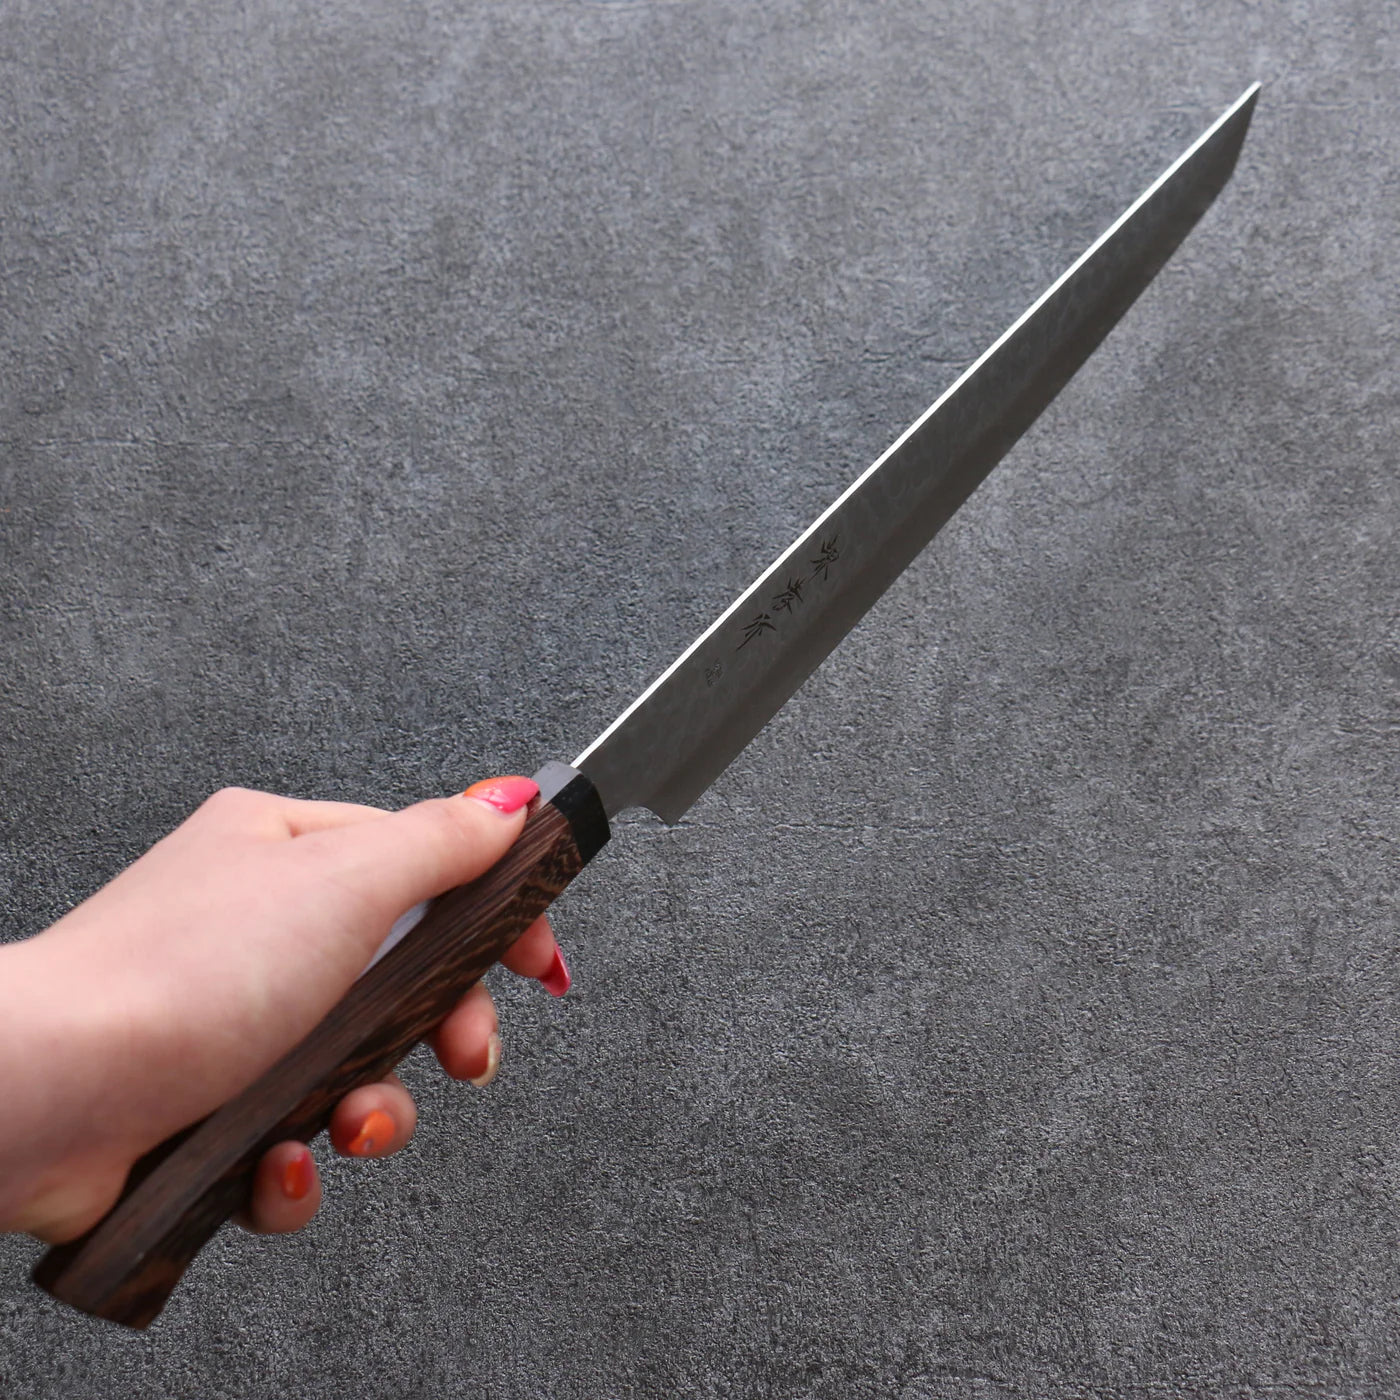 Marke Sakai Takayuki Genbu AUS10 45-lagiger Damaststahl Sujihiki geripptes Messer (stumpfes Ende) Japanisches Messer 300 mm Wenge-Holzgriff